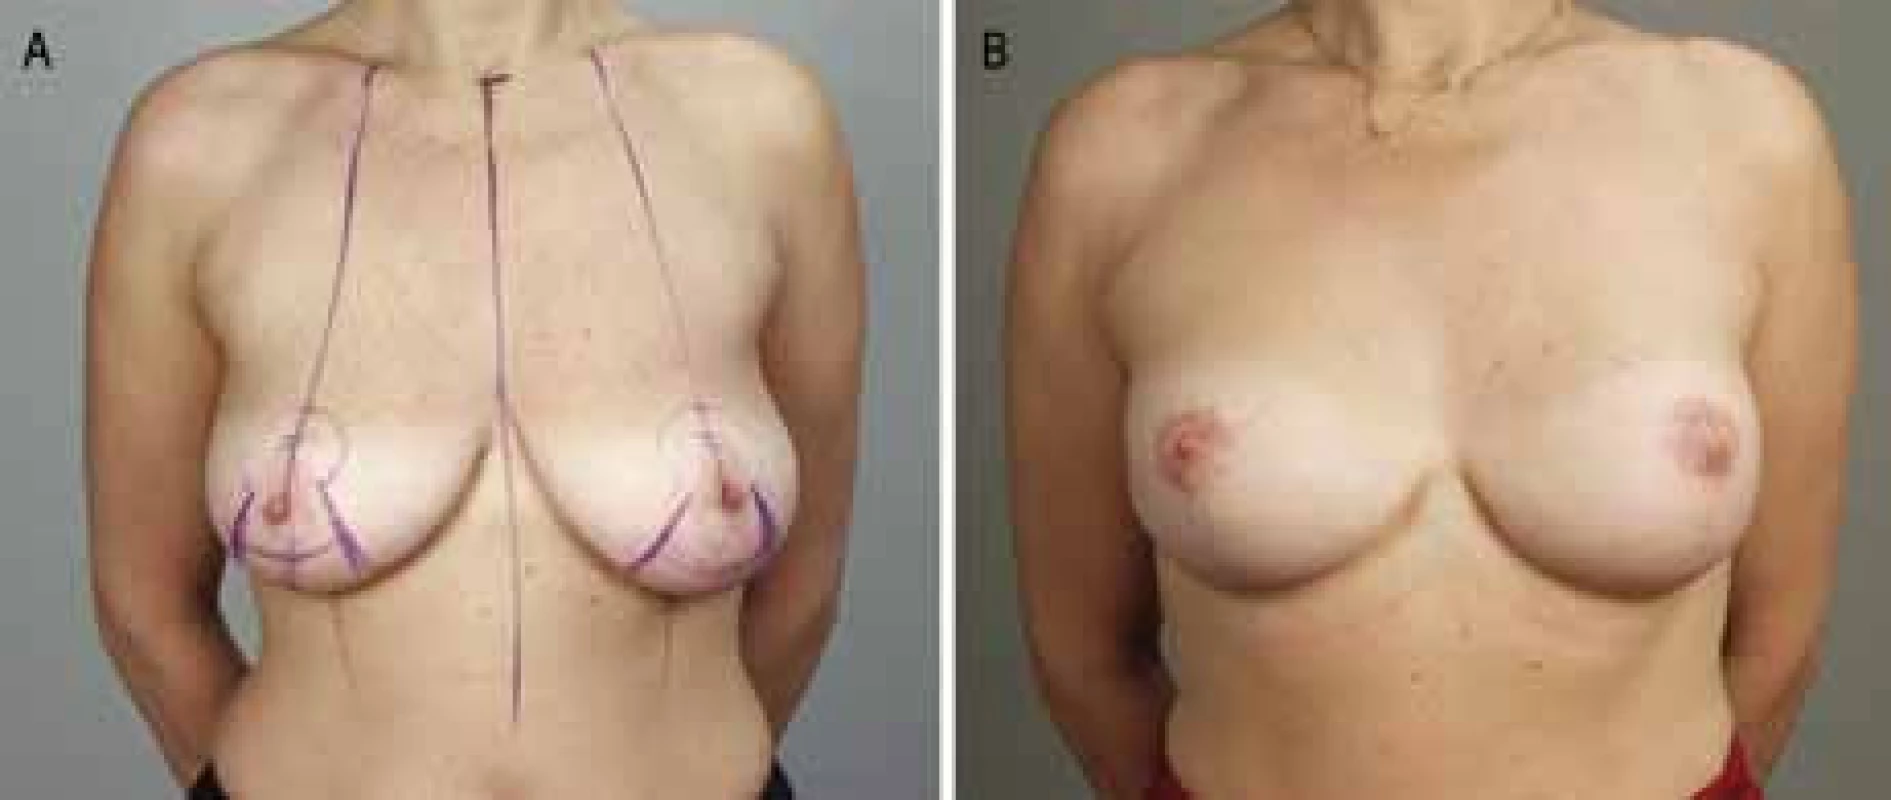 A. Zdravá BRCA1-pozitivní pacientka před oboustrannou subkutánní mastektomií s modelací; 2B. Po rekonstrukci implantáty.